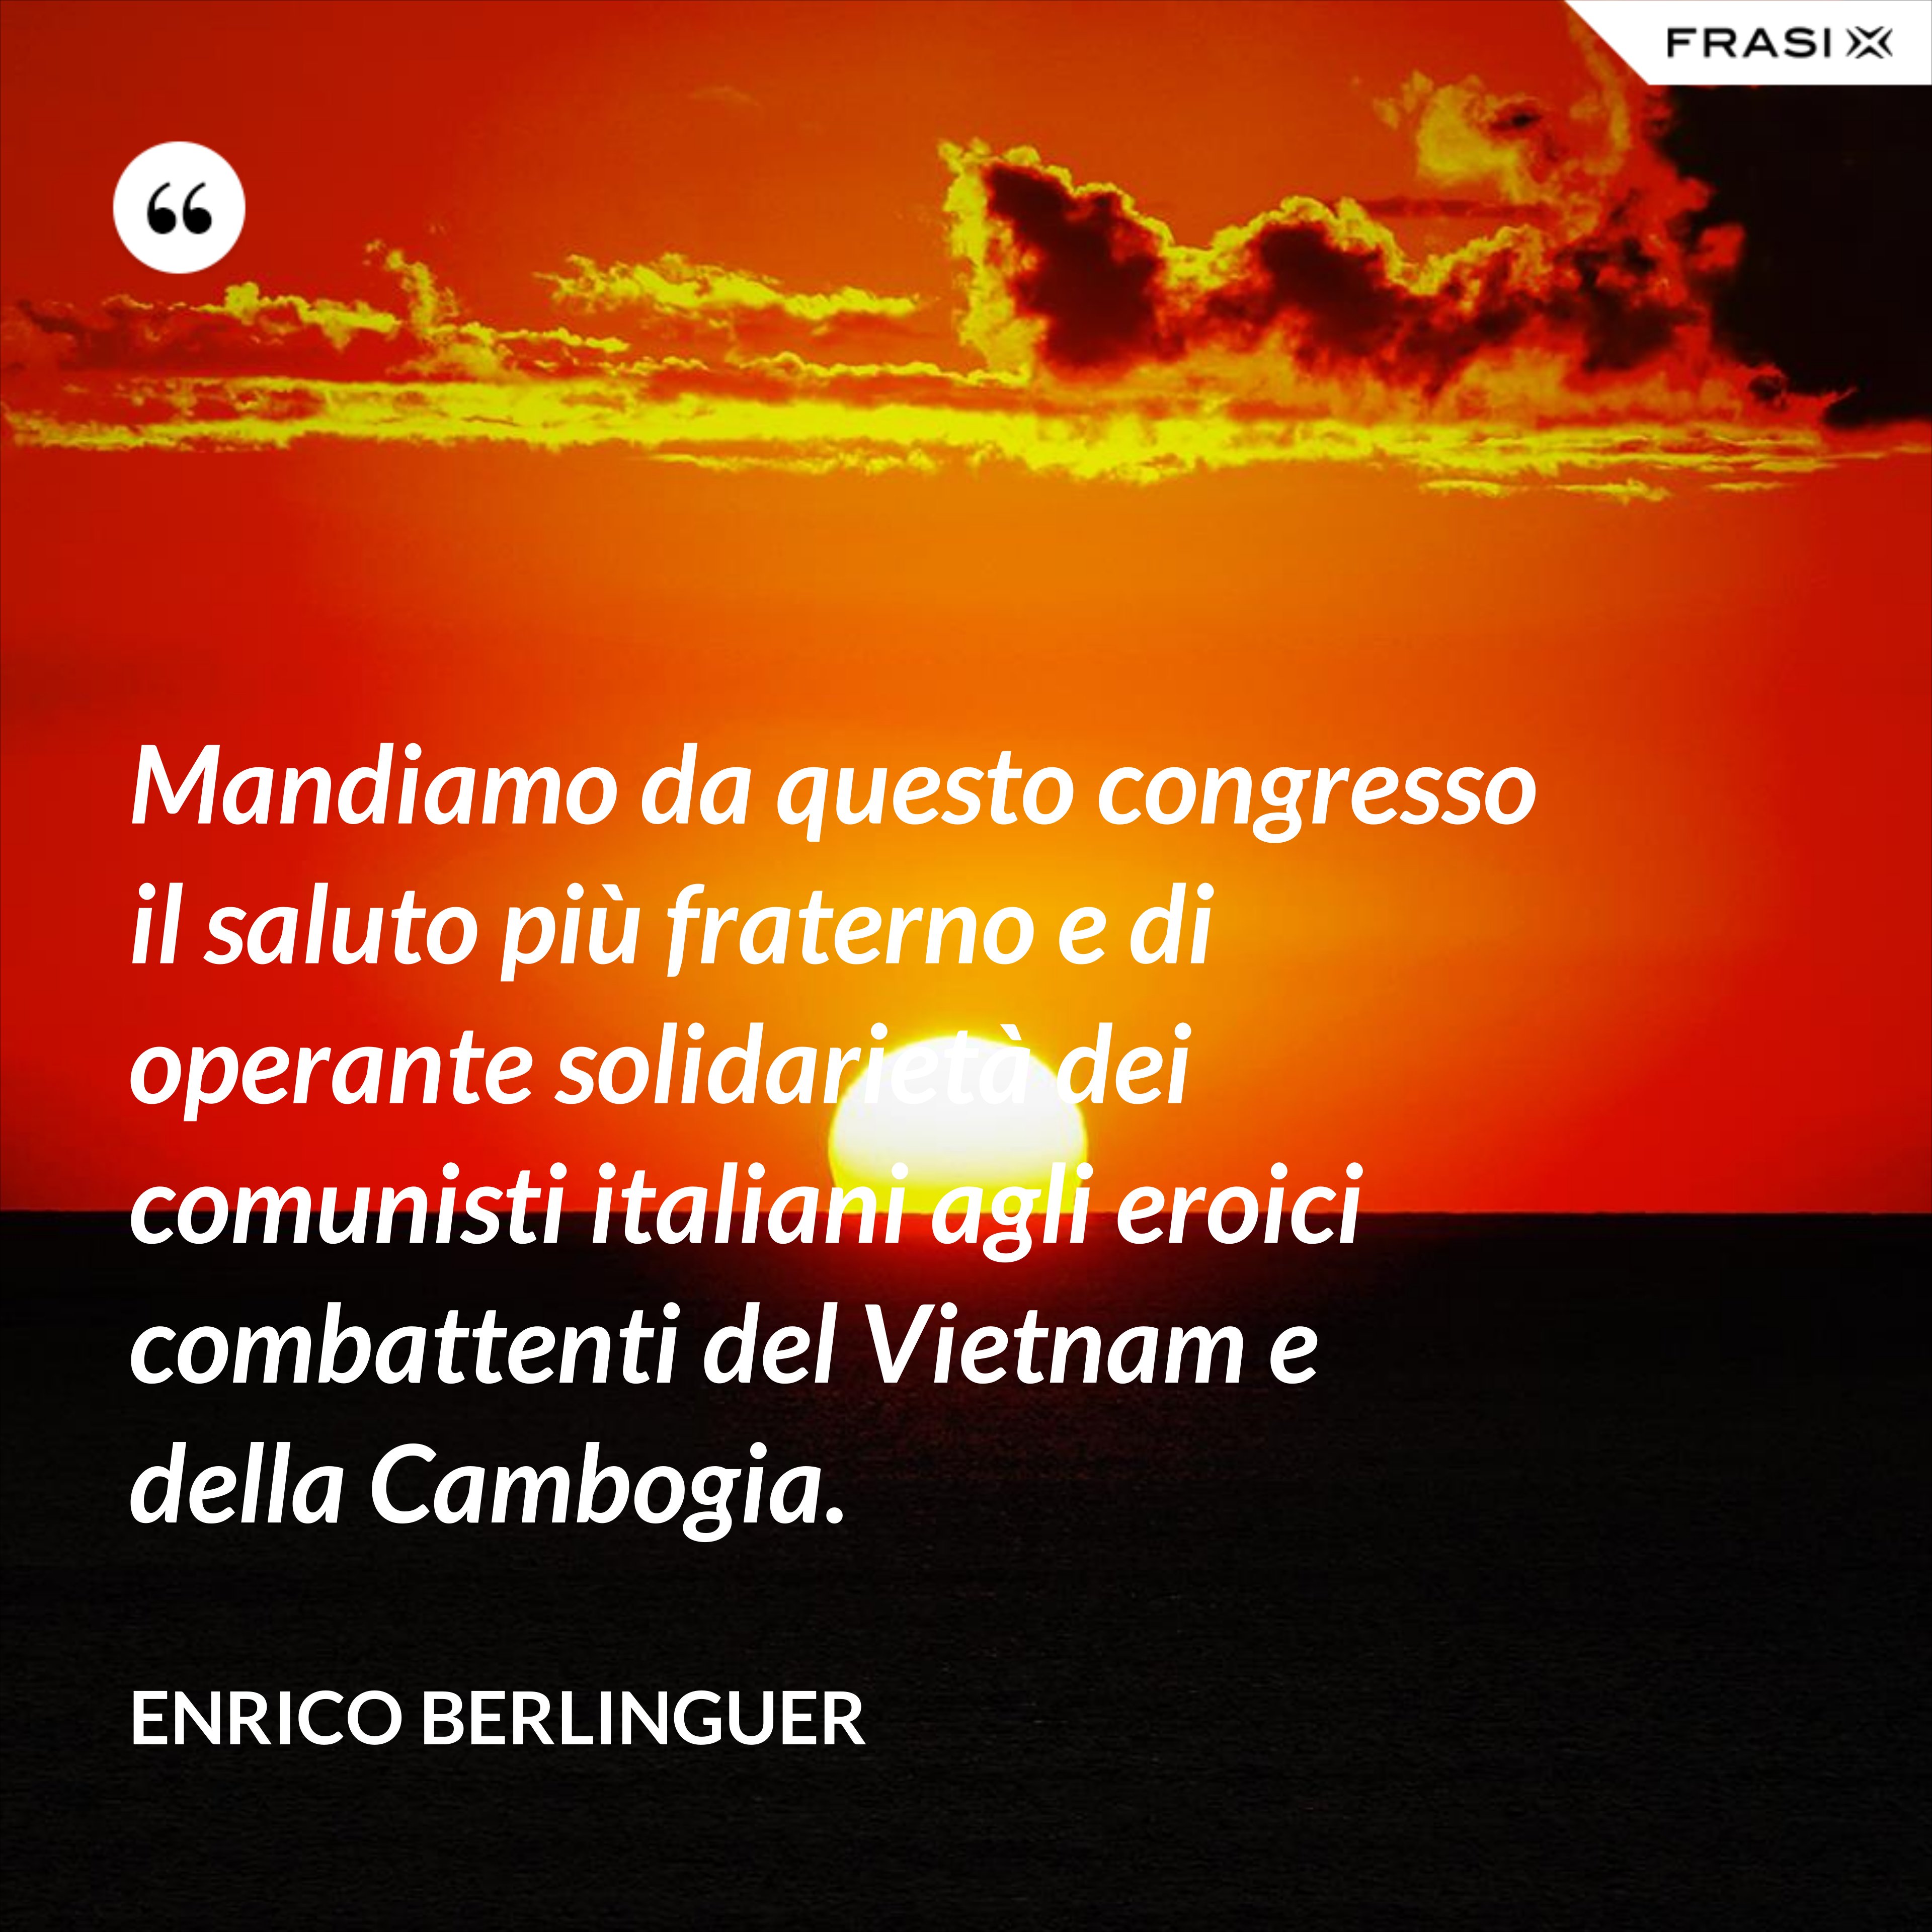 Mandiamo da questo congresso il saluto più fraterno e di operante solidarietà dei comunisti italiani agli eroici combattenti del Vietnam e della Cambogia. - Enrico Berlinguer